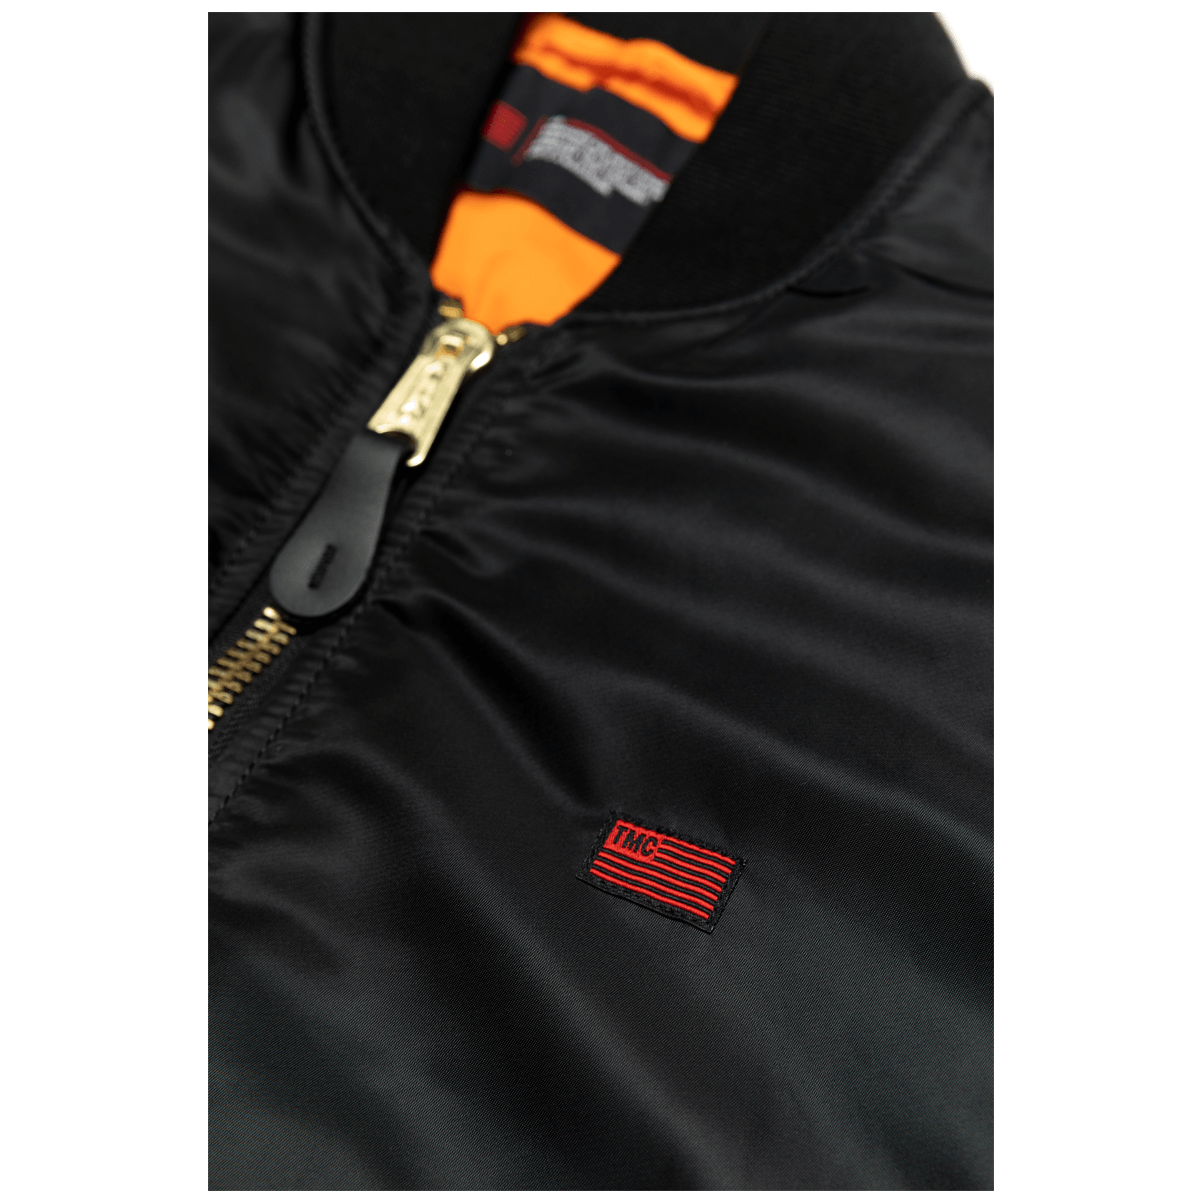 Marathon Bomber Jacket - Black / Black- The Marathon Clothing